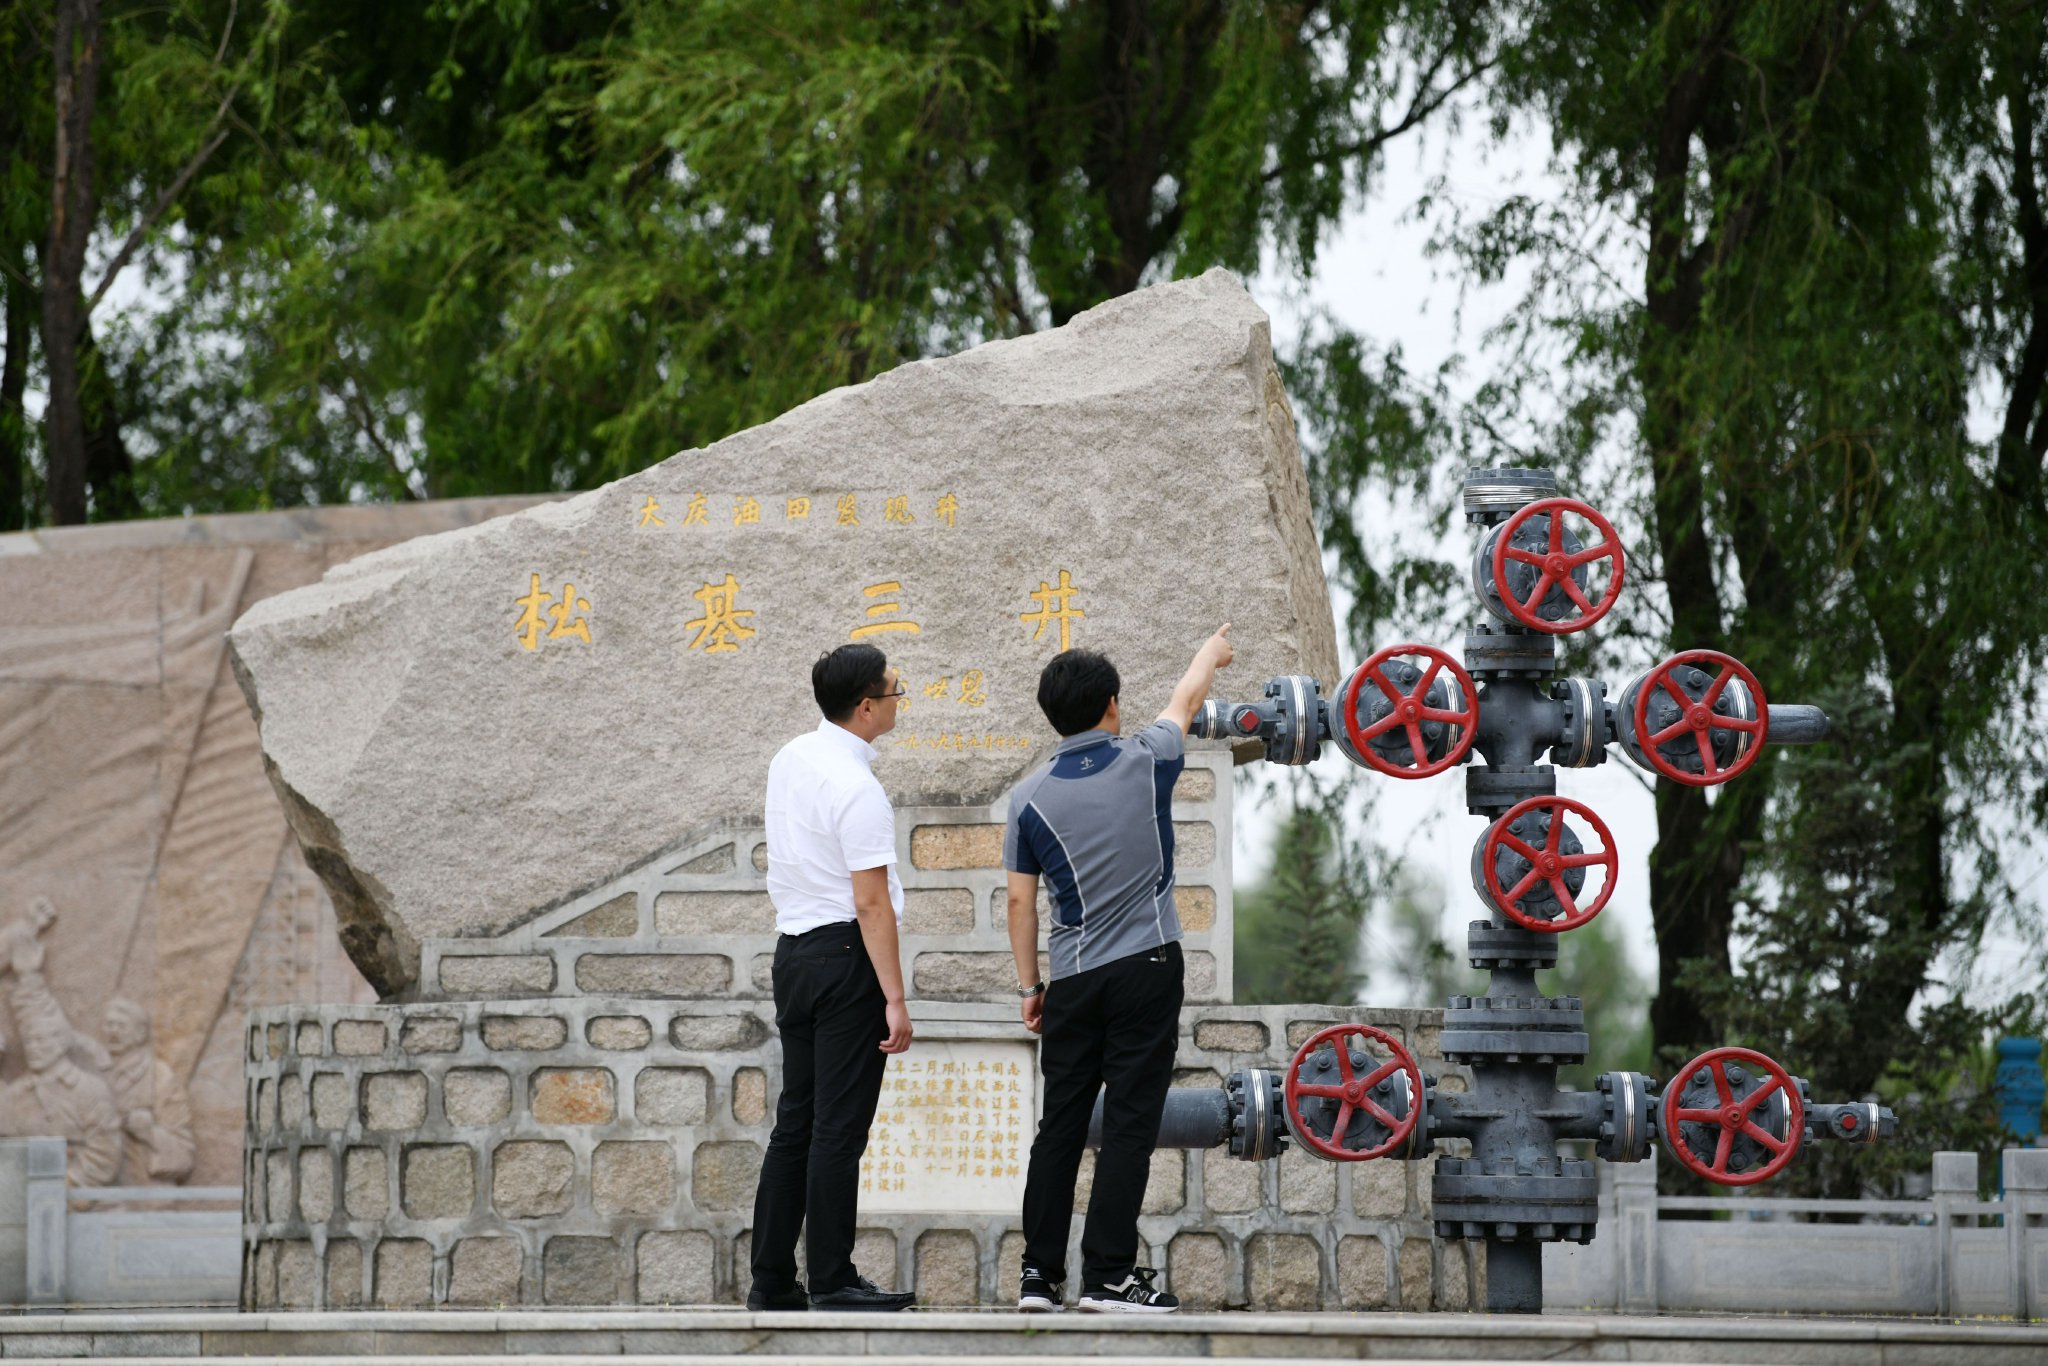 人們在大慶油田鬆基三井參觀（6月27日攝）新華社記者 王建威 攝